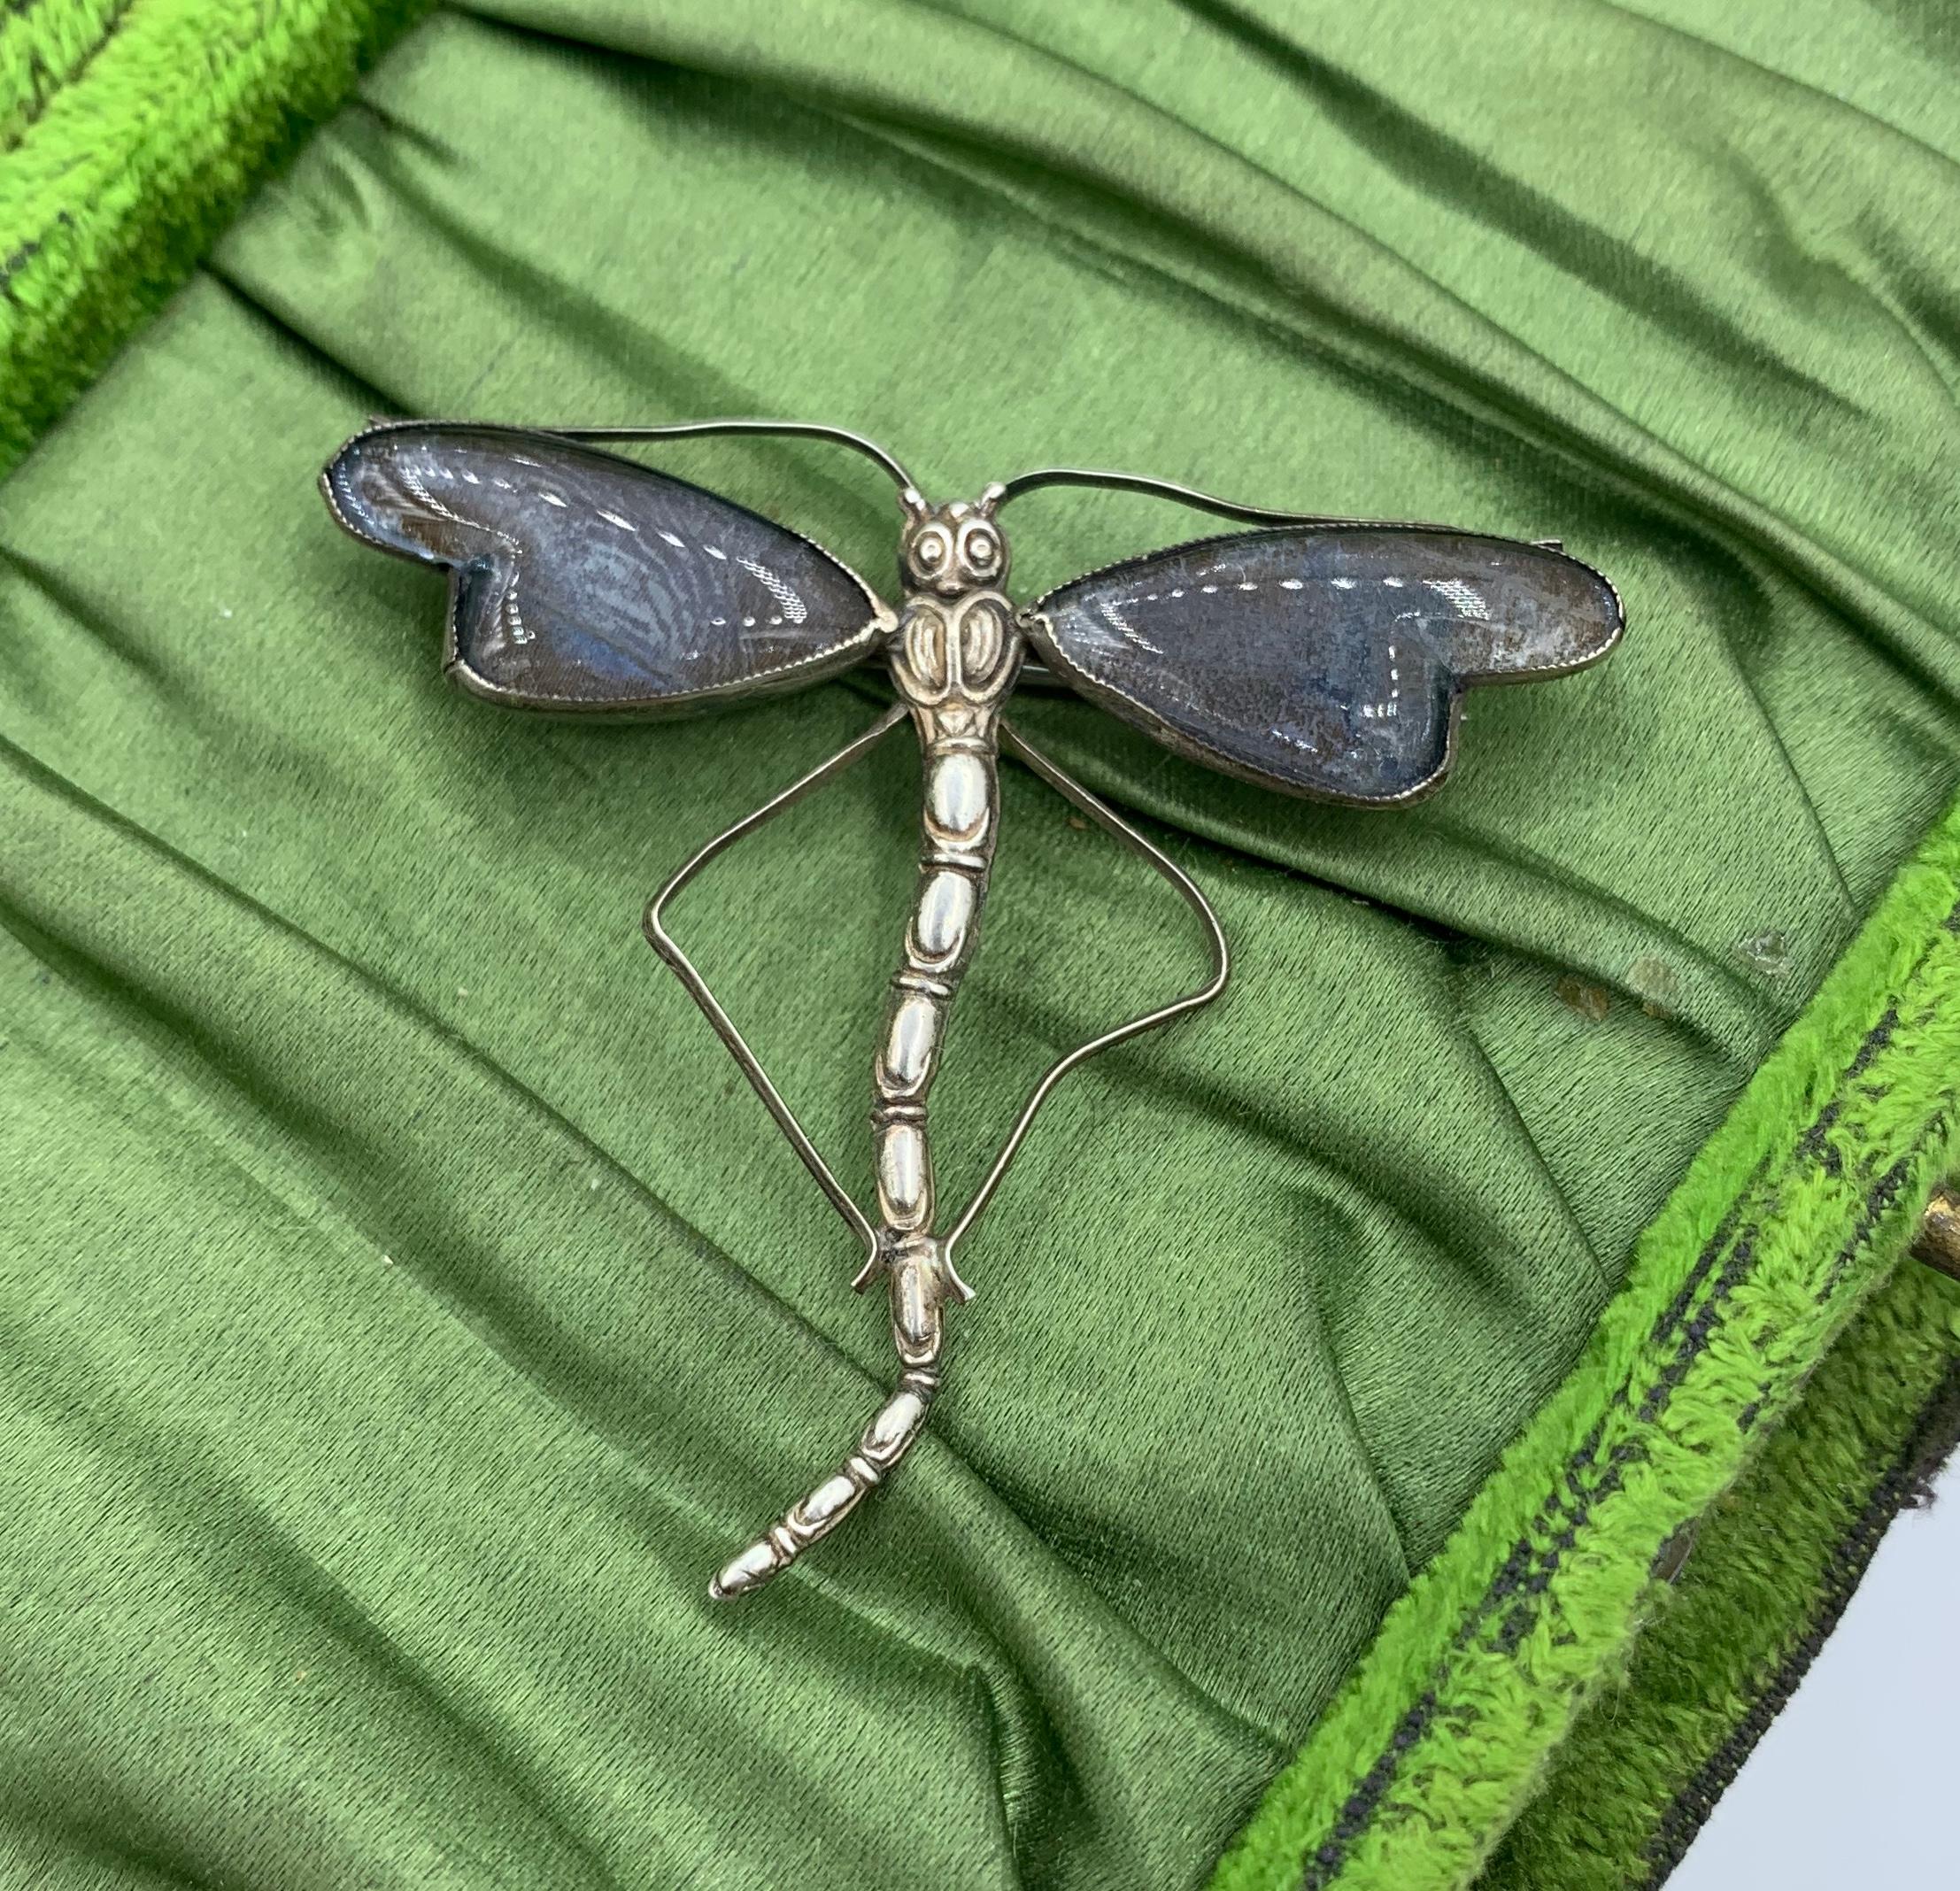 Dies ist eine atemberaubende Art Nouveau - Art Deco Libelle Insekt Motte Brosche Pin mit außergewöhnlichen schillernden Schmetterlingsflügeln in Sterling Silber gesetzt.  Die natürlichen Schmetterlingsflügel sind hinter Glas gefasst und bilden die